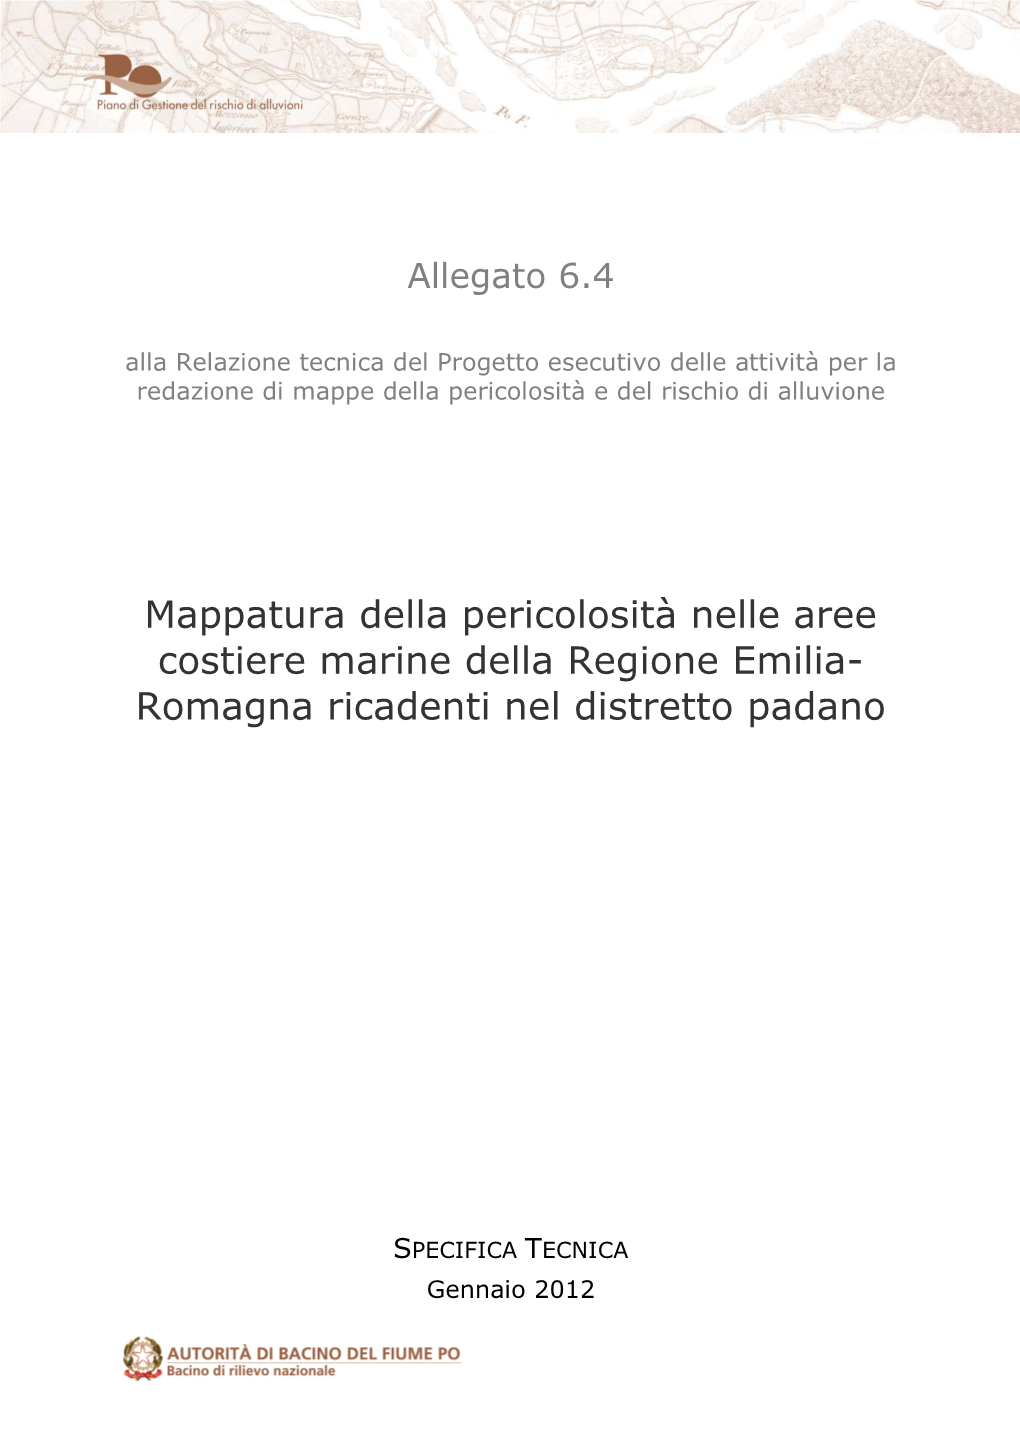 Mappatura Della Pericolosità Nelle Aree Costiere Marine Della Regione Emilia- Romagna Ricadenti Nel Distretto Padano